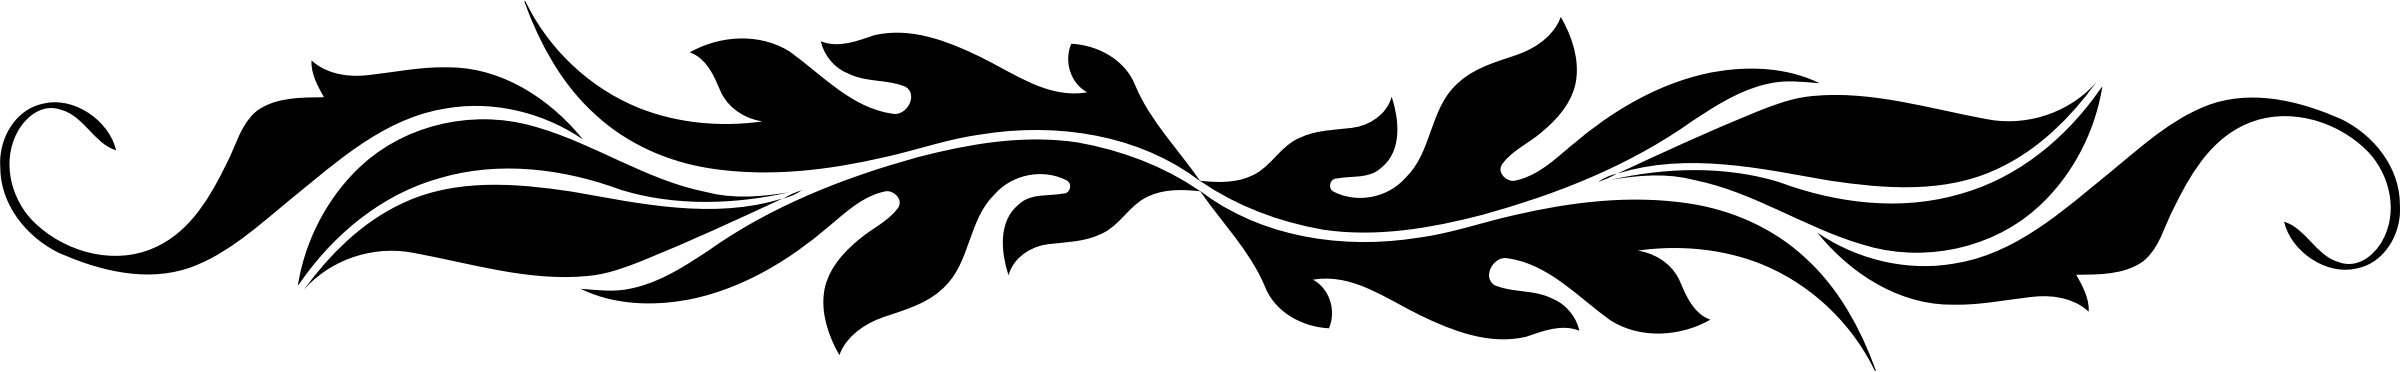 divider.png (1589×304)